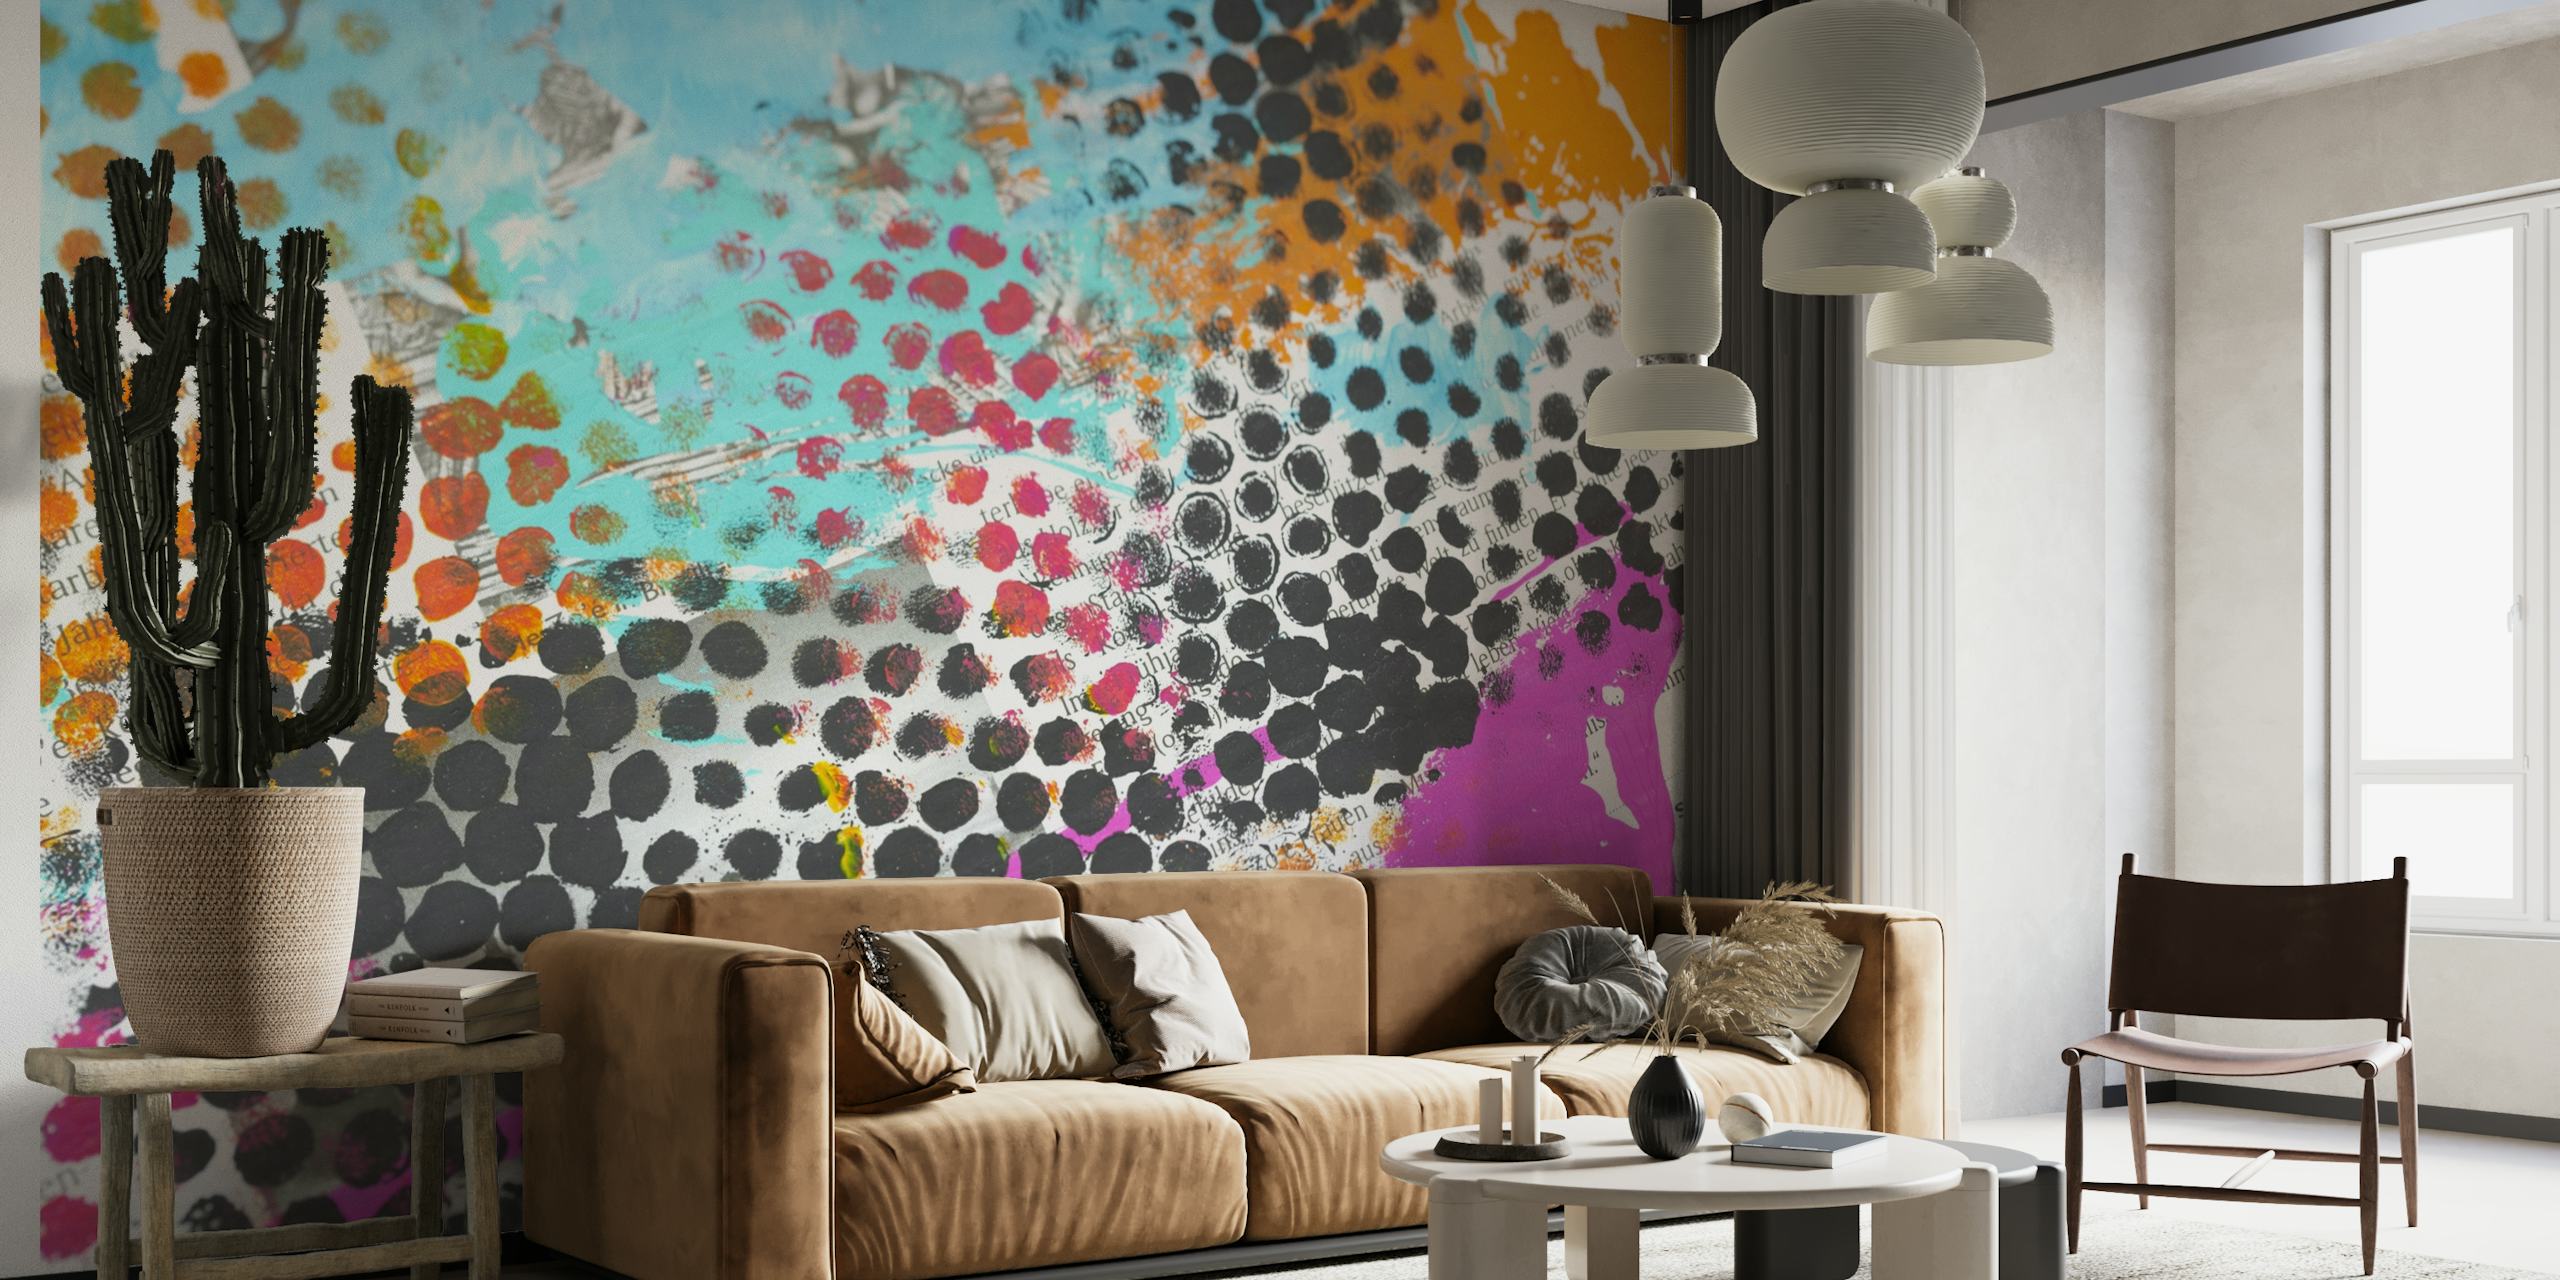 Värikäs grunge-tyylinen seinämaalaus pistekuvioilla ja eloisilla väreillä